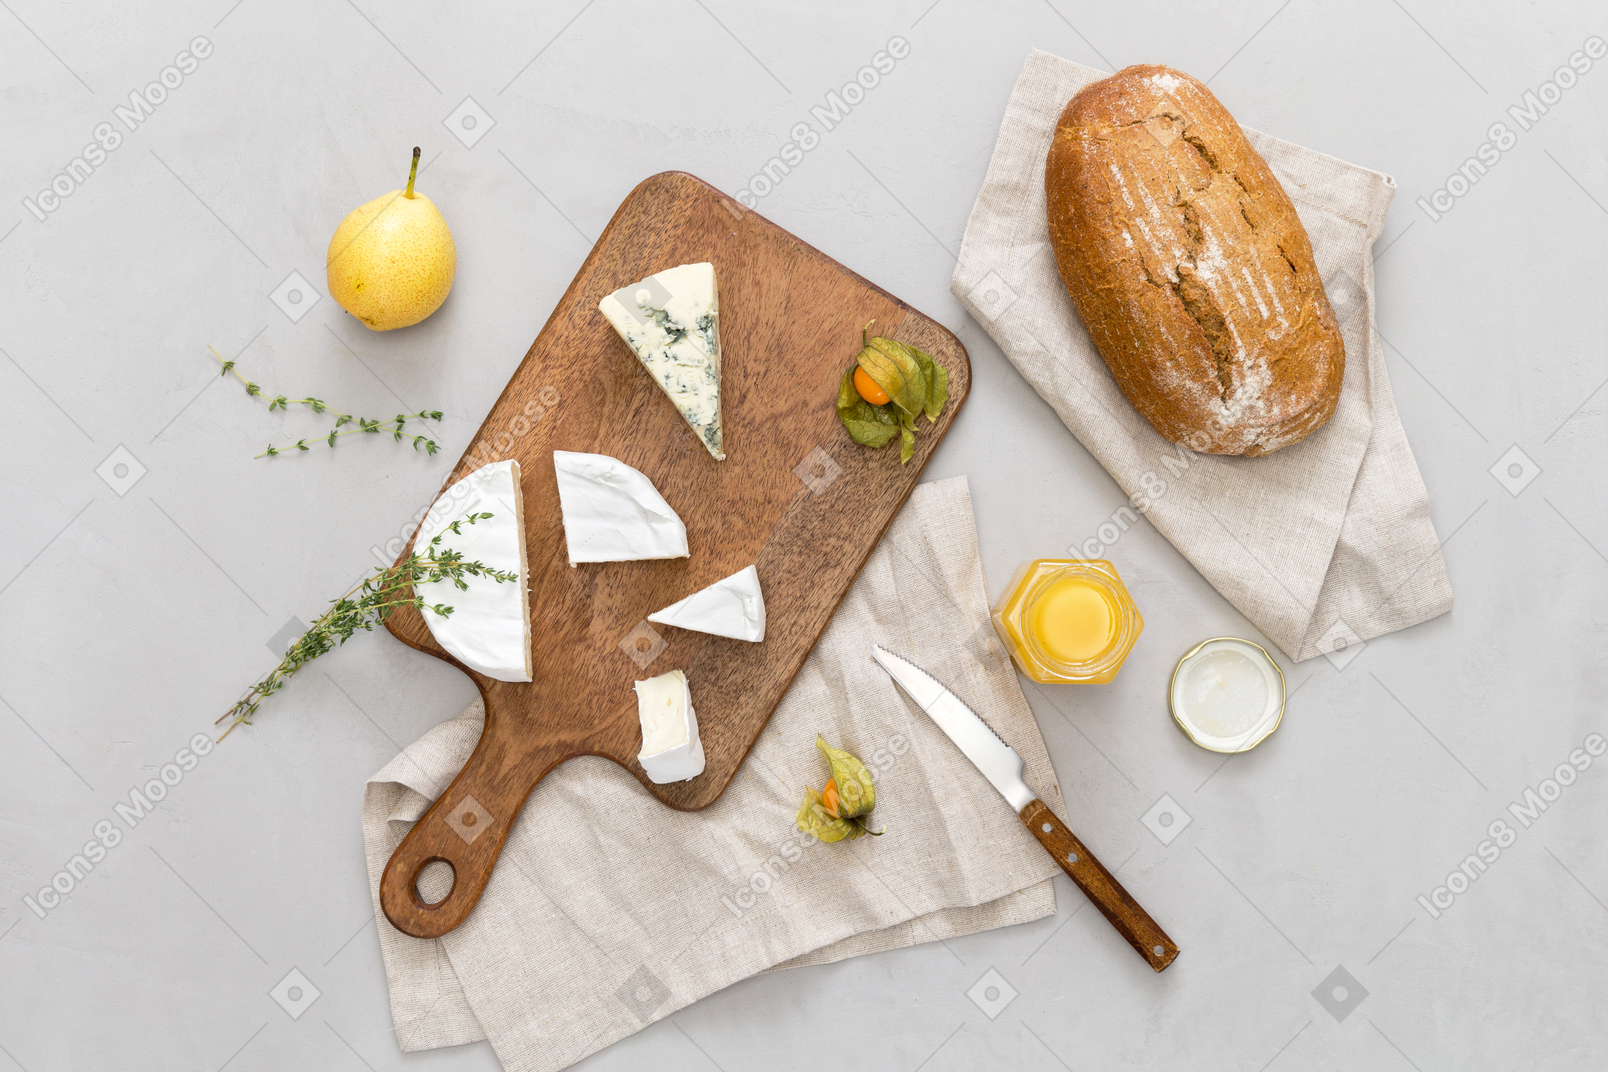 Черный хлеб, немного сыра, банка меда и груши